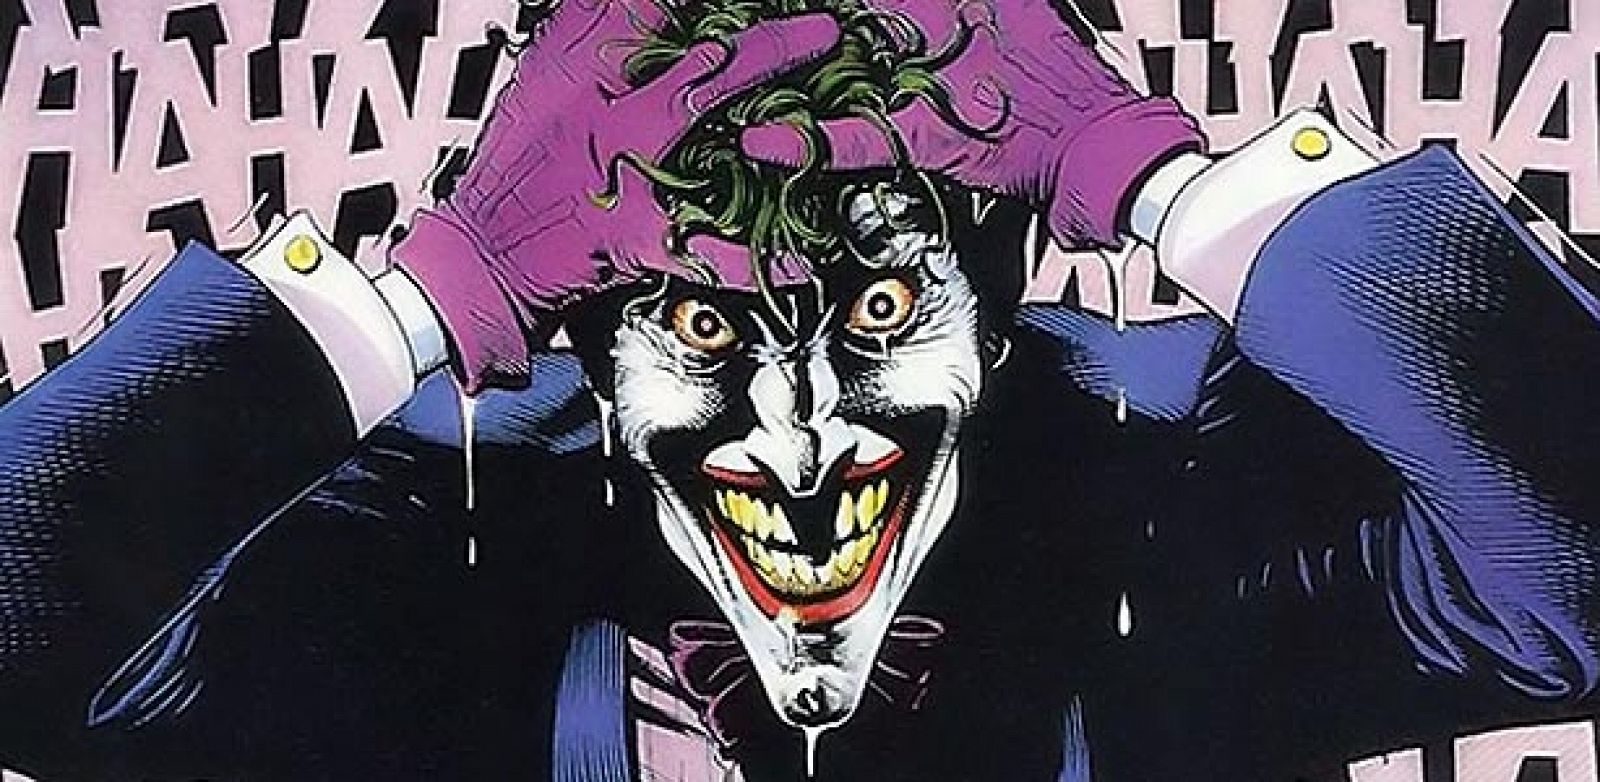 El Joker, el mayor enemigo de Batman y , posiblemente, el mejor villano de la historia del cómic, cumple 70 años. Viñeta de 'La broma asesina' de Alan Moore y Brian Bolland. Copyright DC Comics. Publicado en España por Planeta DeAgostini